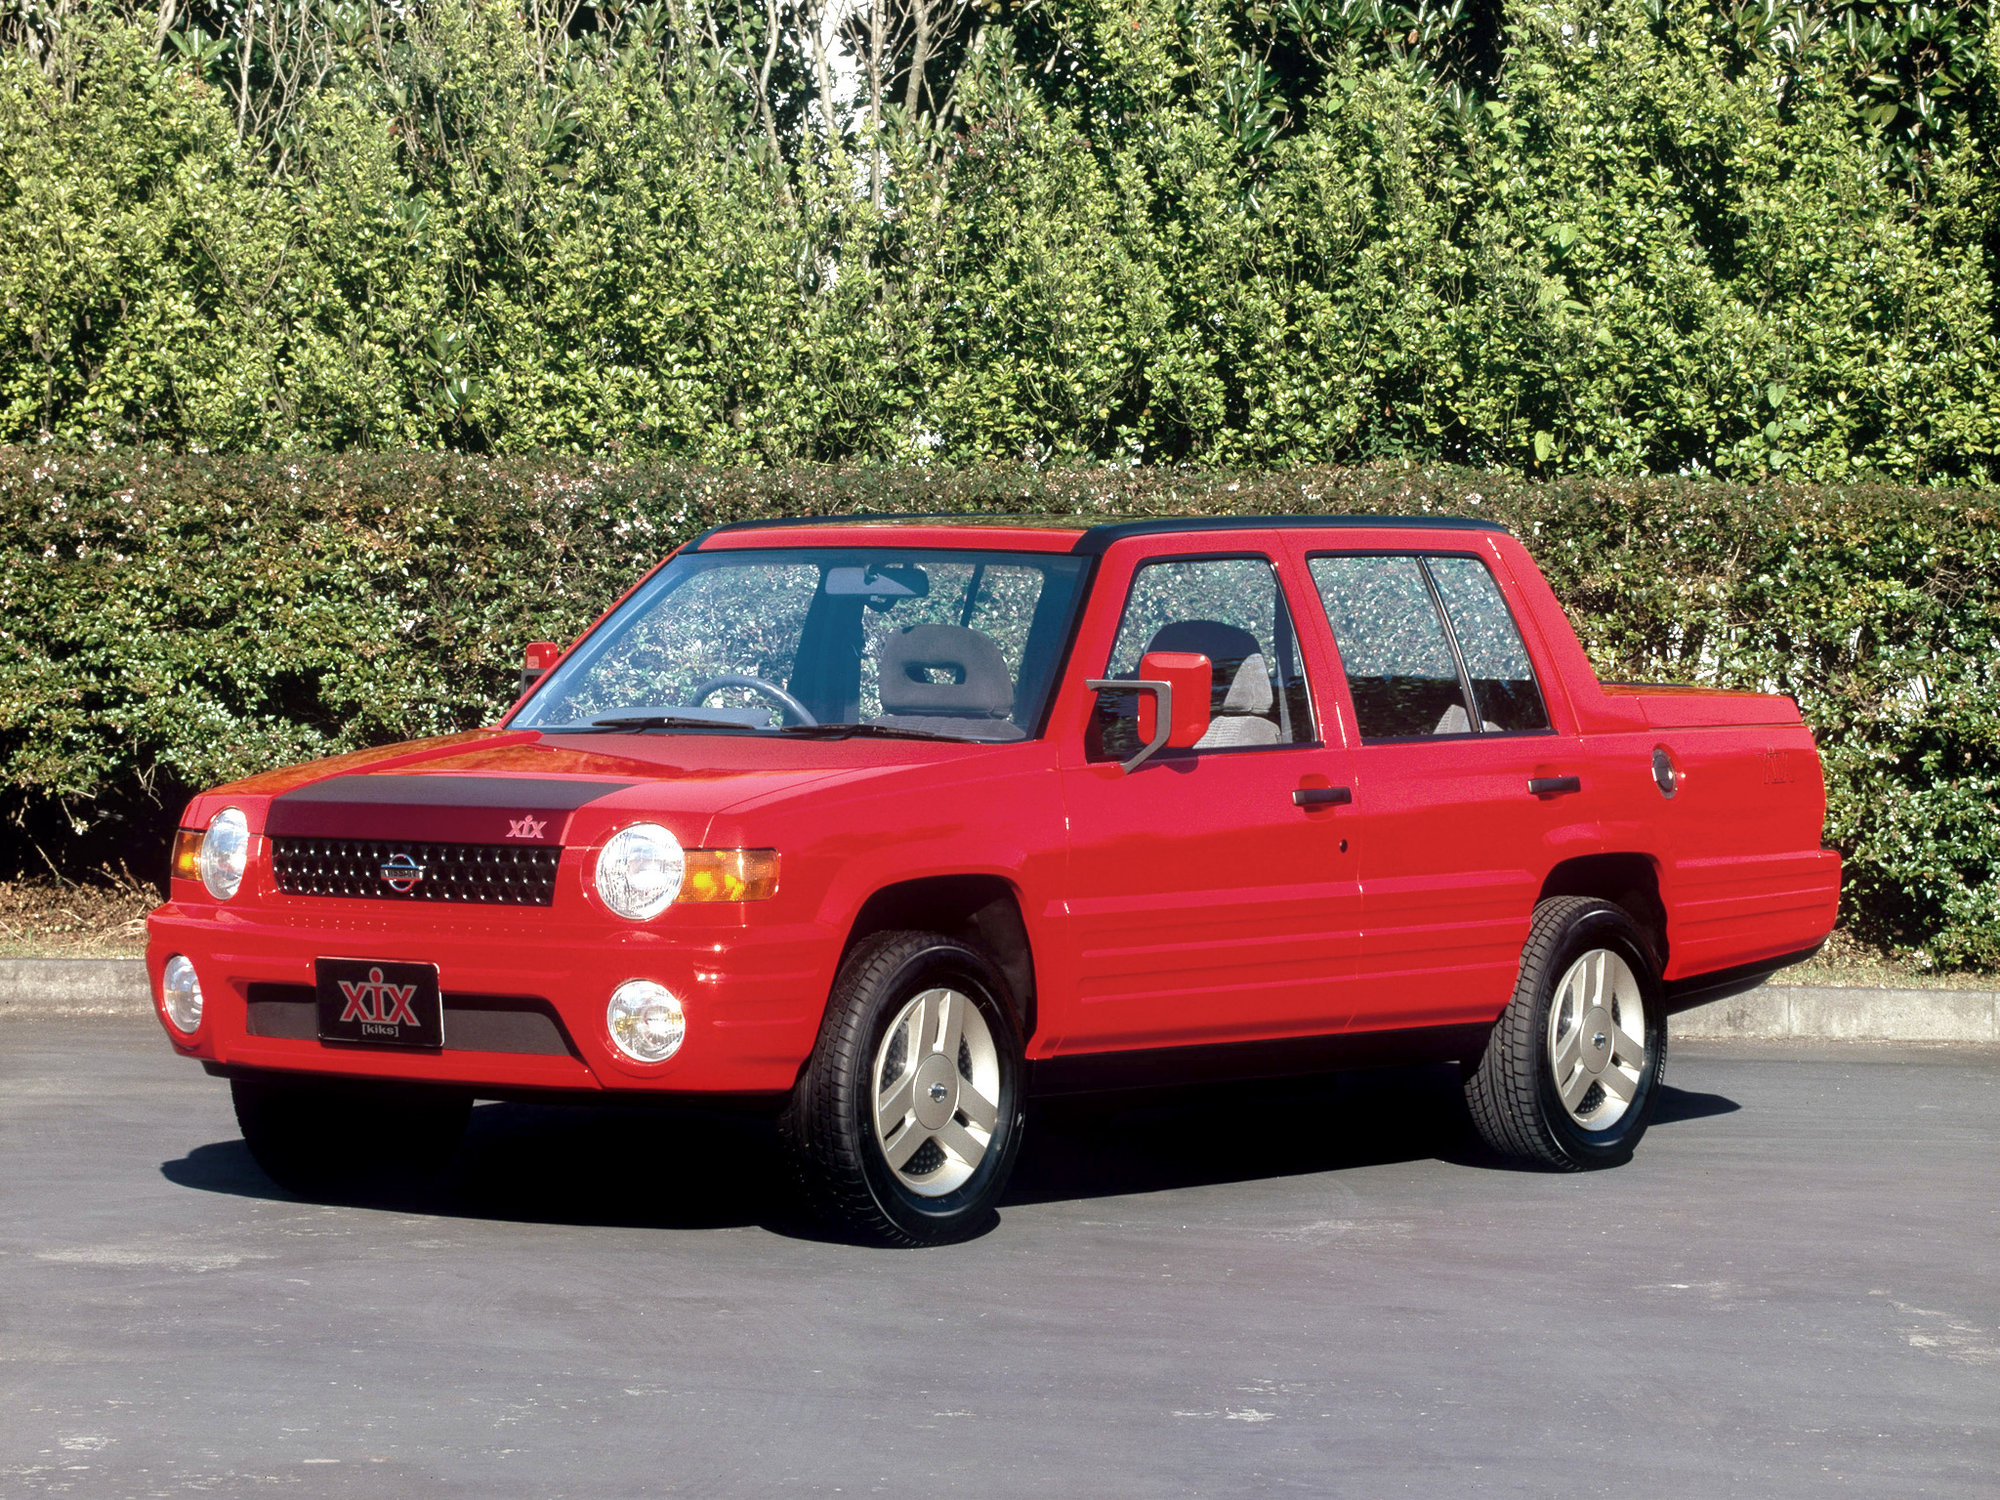 Nissan XIX mohl být prvním městským pickupem na světě, skončil ale jen jako koncept.